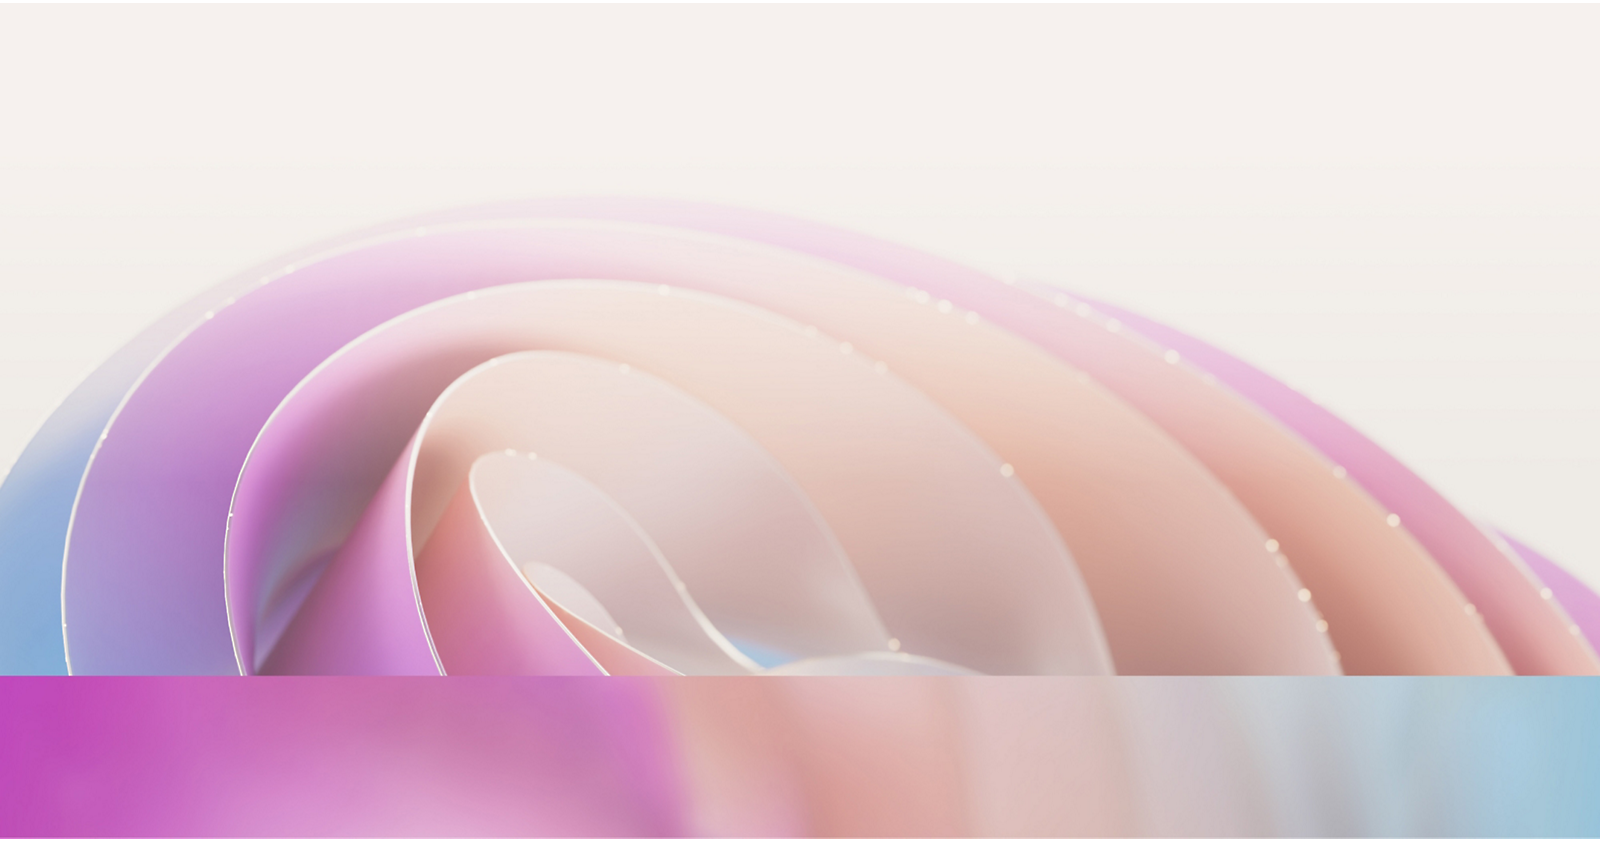 صورة مجردة تظهر منحنيات ملونة ناعمة ومتداخلة بظلال باستيل من اللون الوردي والأرجواني والأزرق 